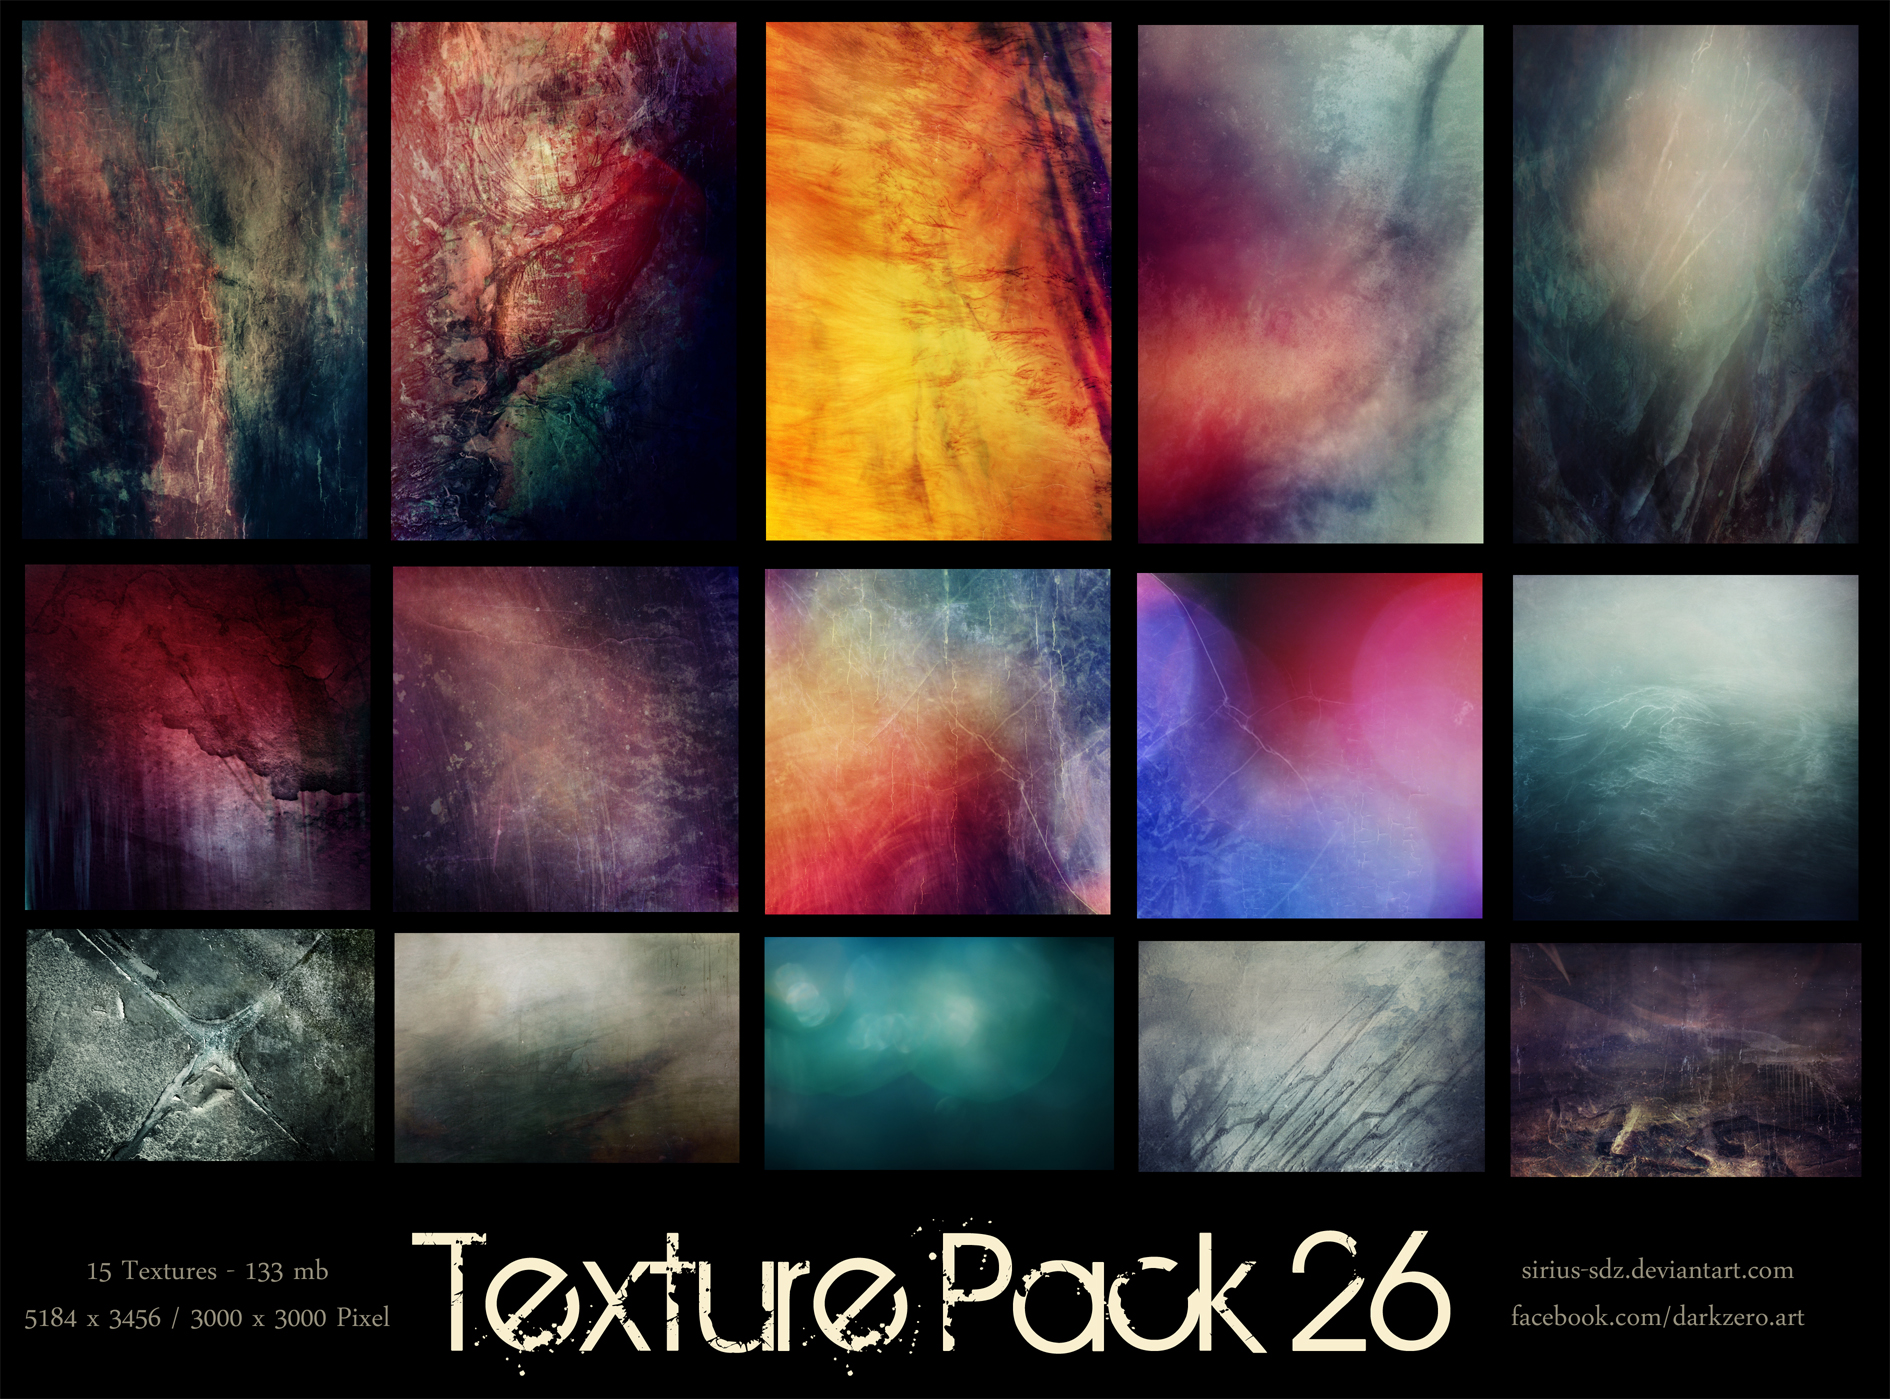 Texture Pack 26 by Sirius-sdz